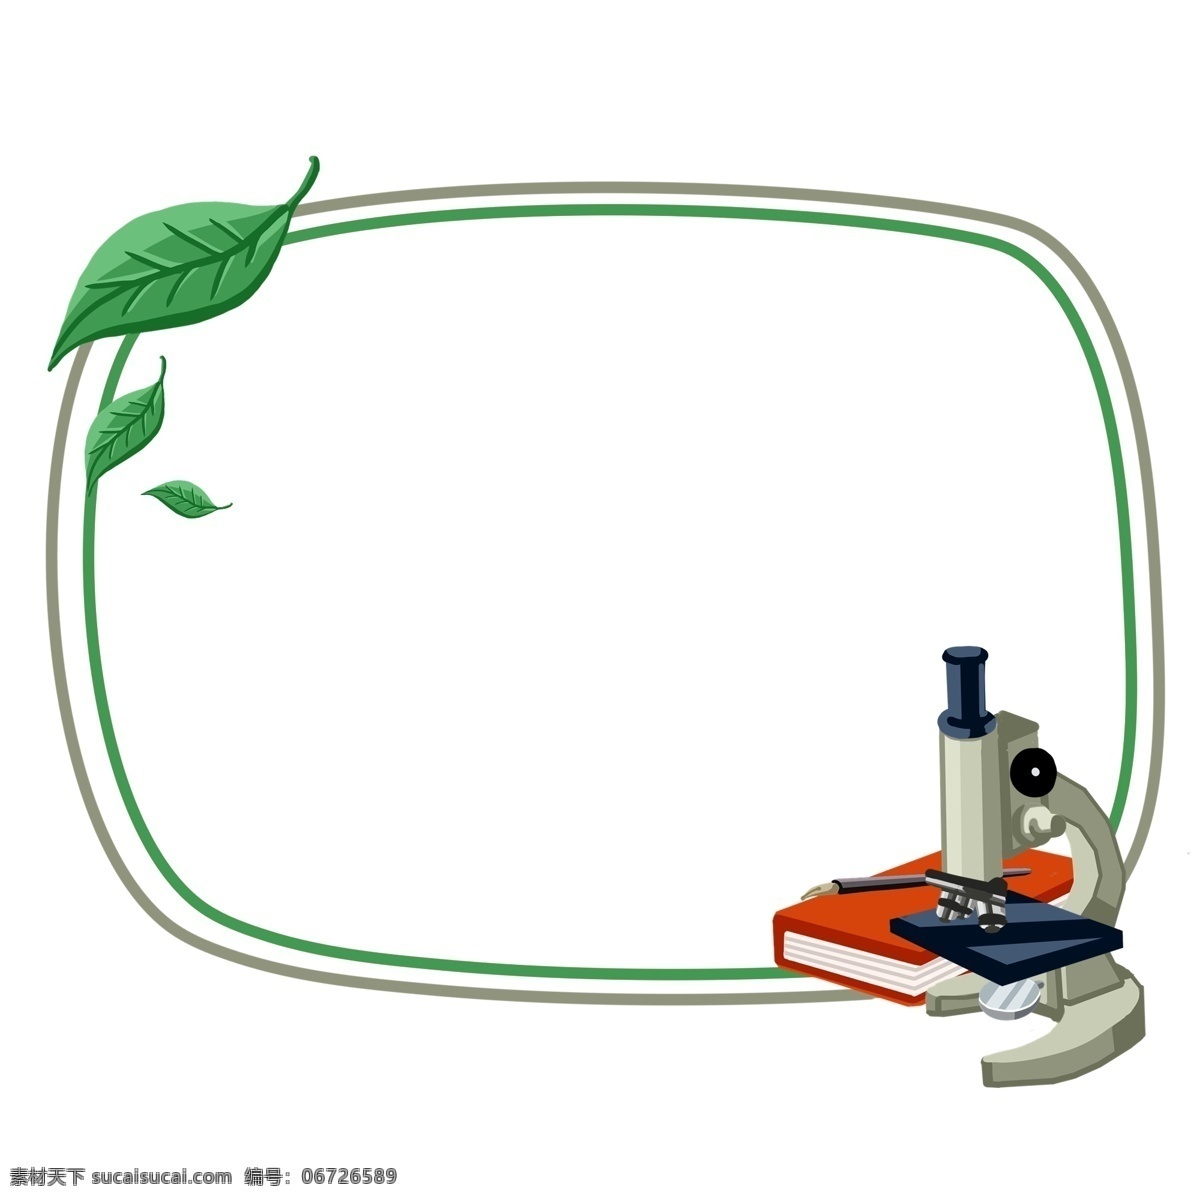 手绘 学习 生物 边框 绿色的边框 绿色的叶子 卡通边框 手绘学习边框 热爱学习边框 白色的显微镜